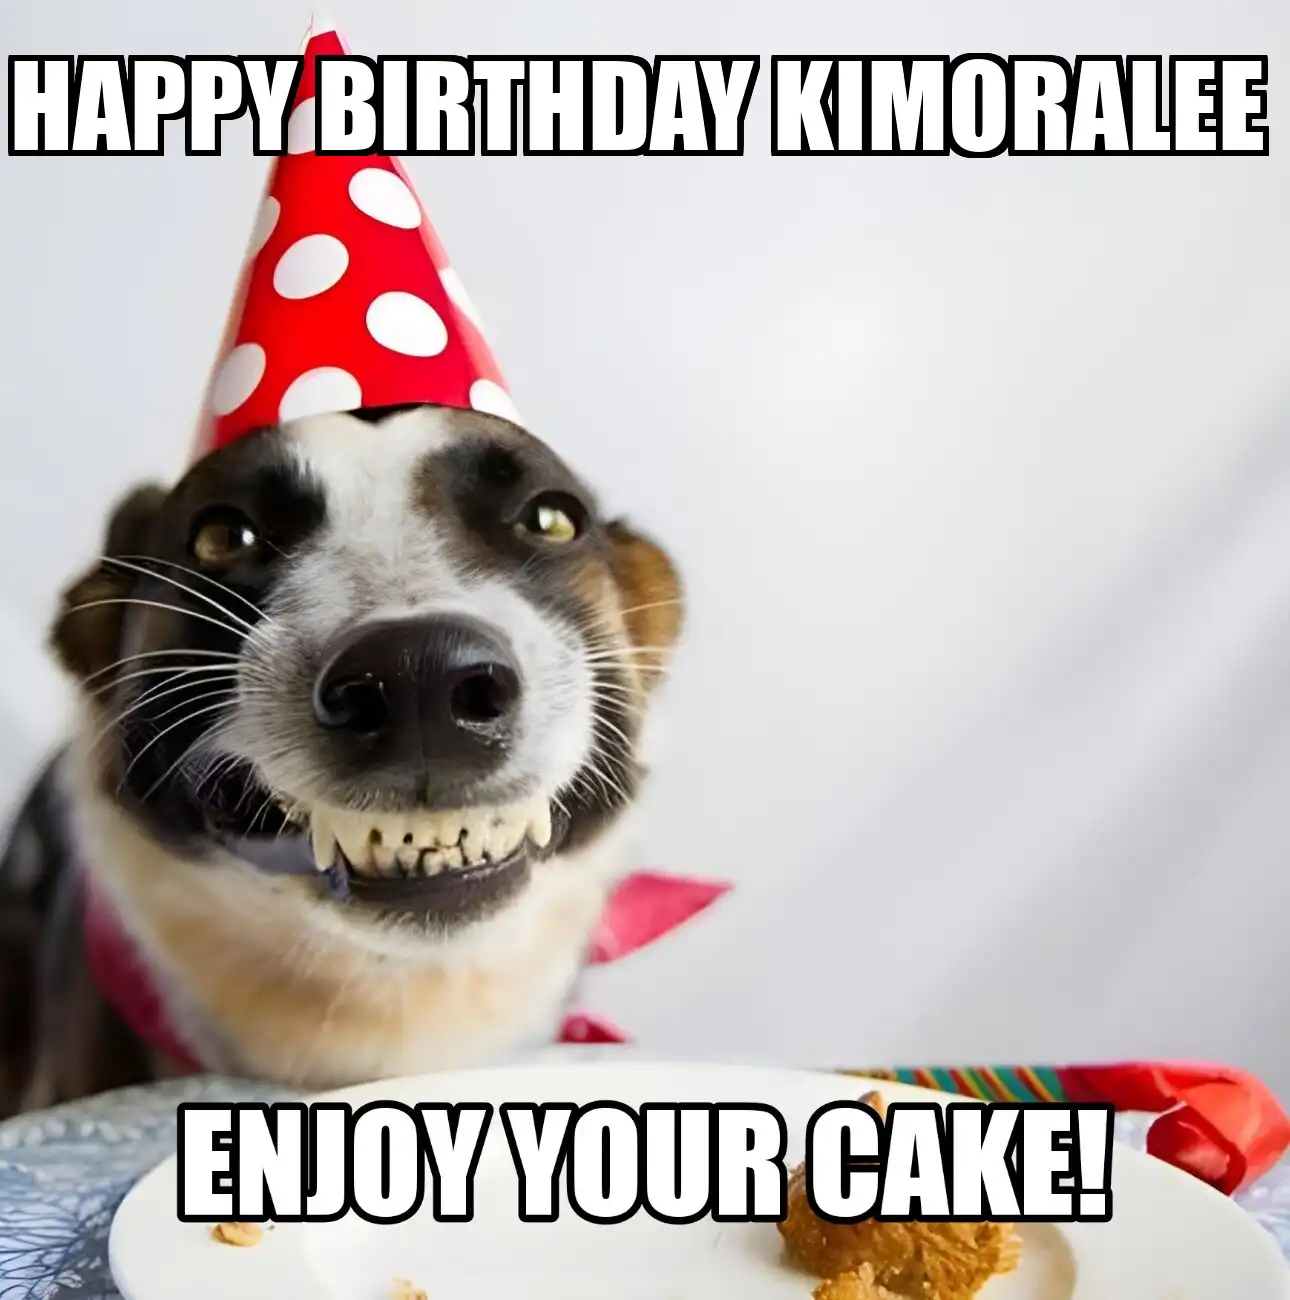 Happy Birthday Kimoralee Enjoy Your Cake Dog Meme